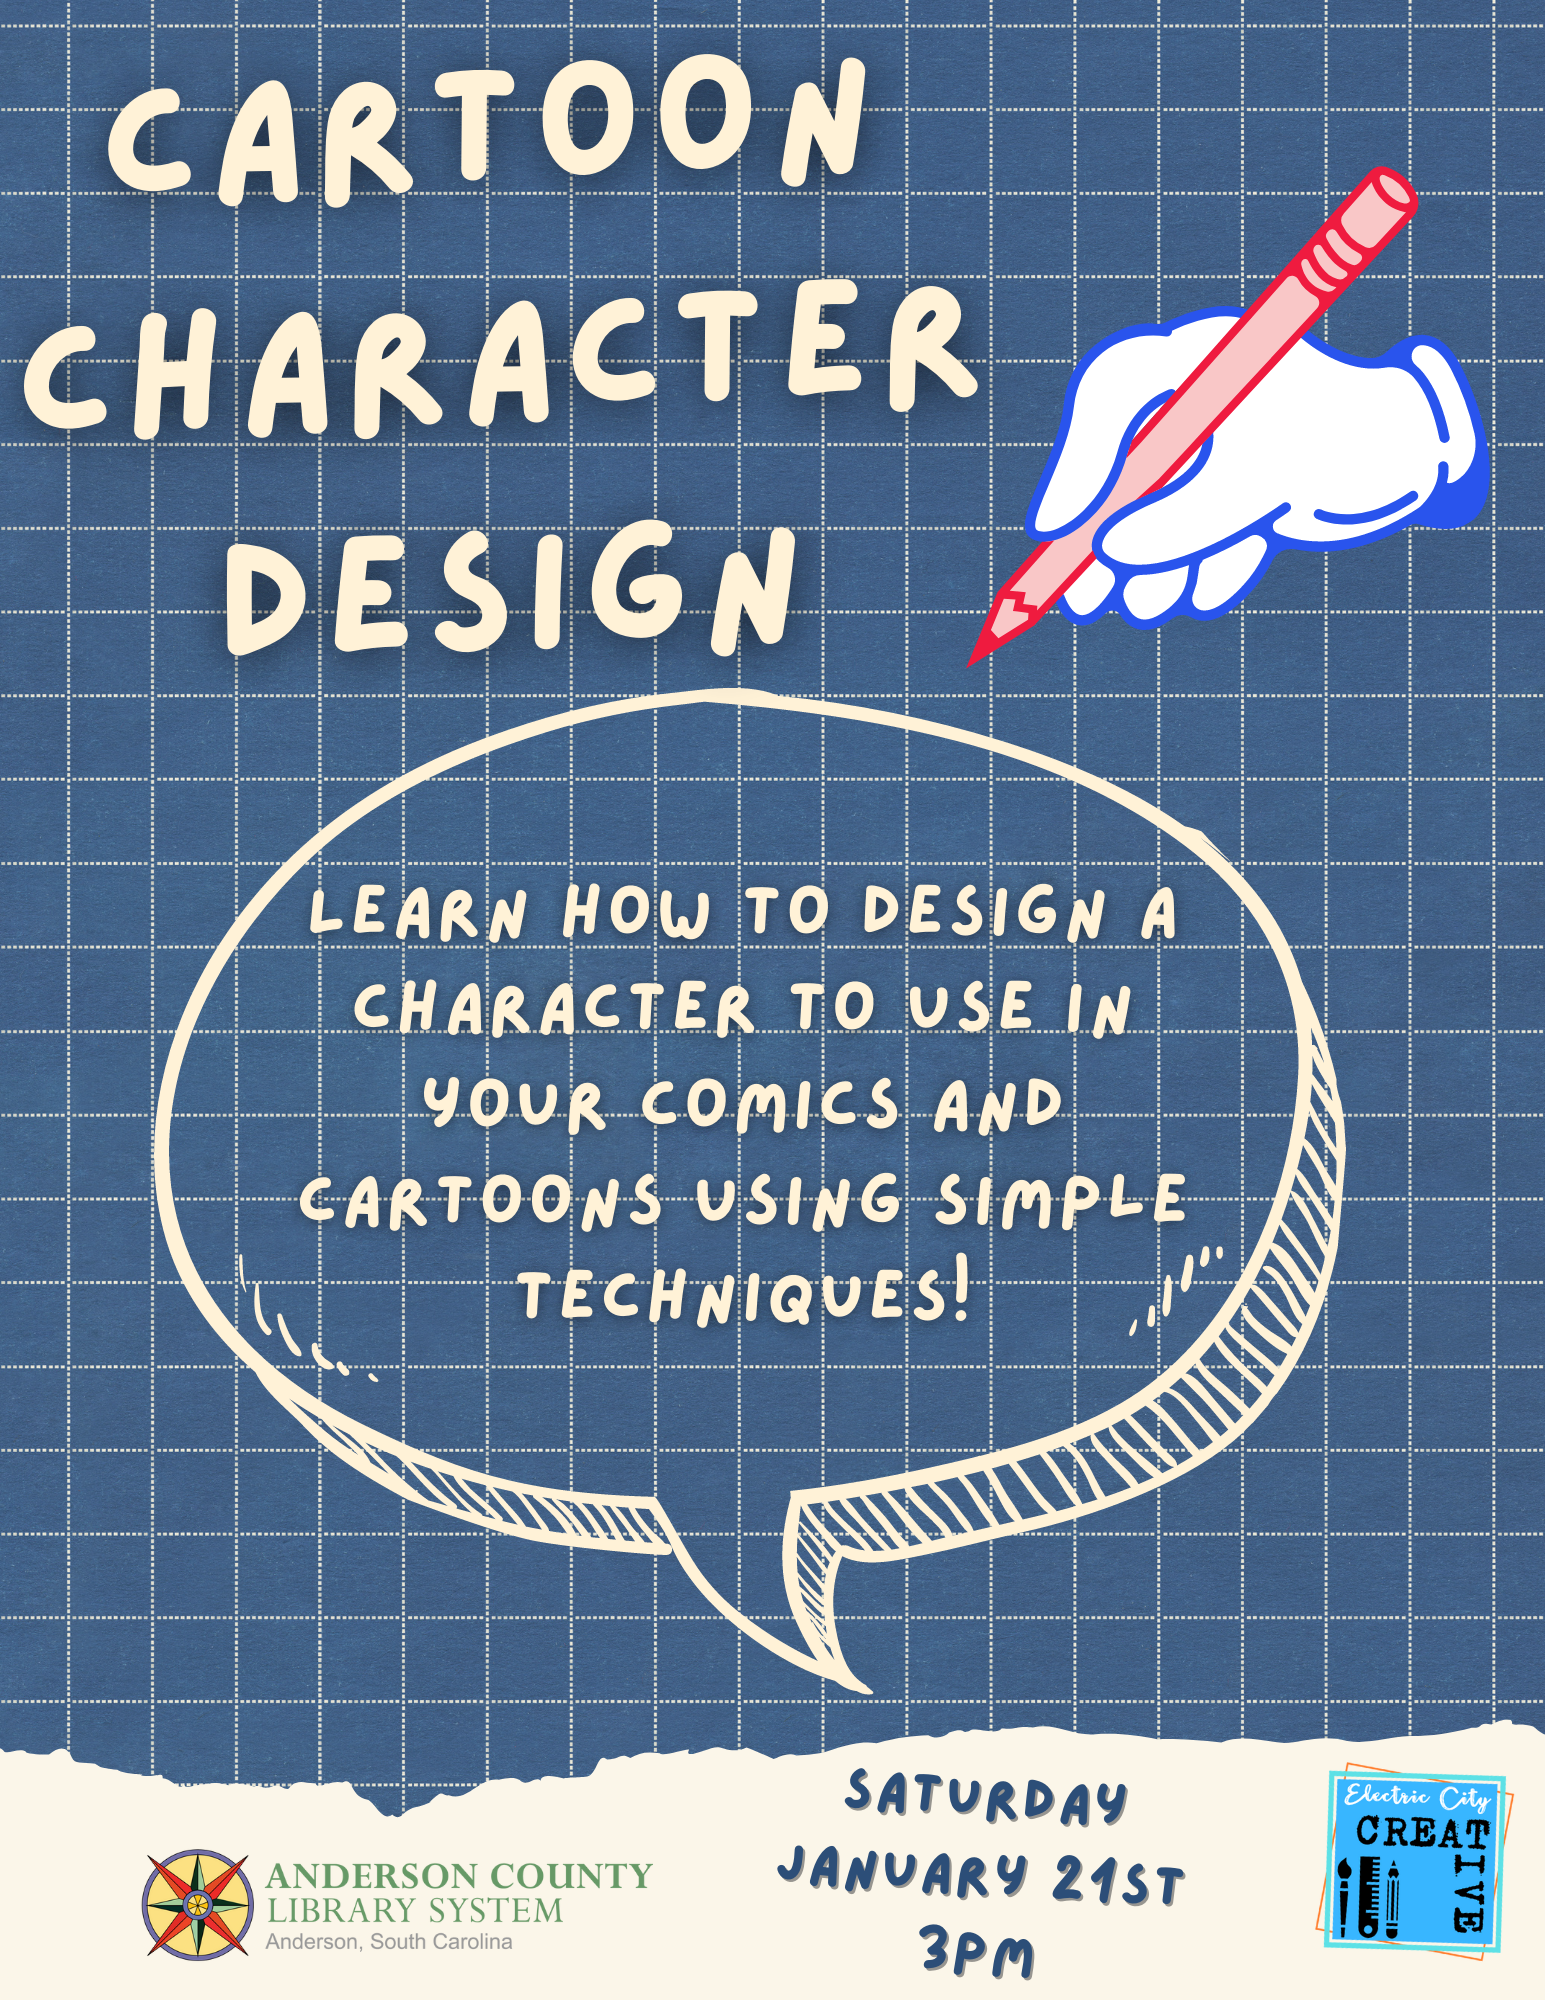 cartoon character design flyer image